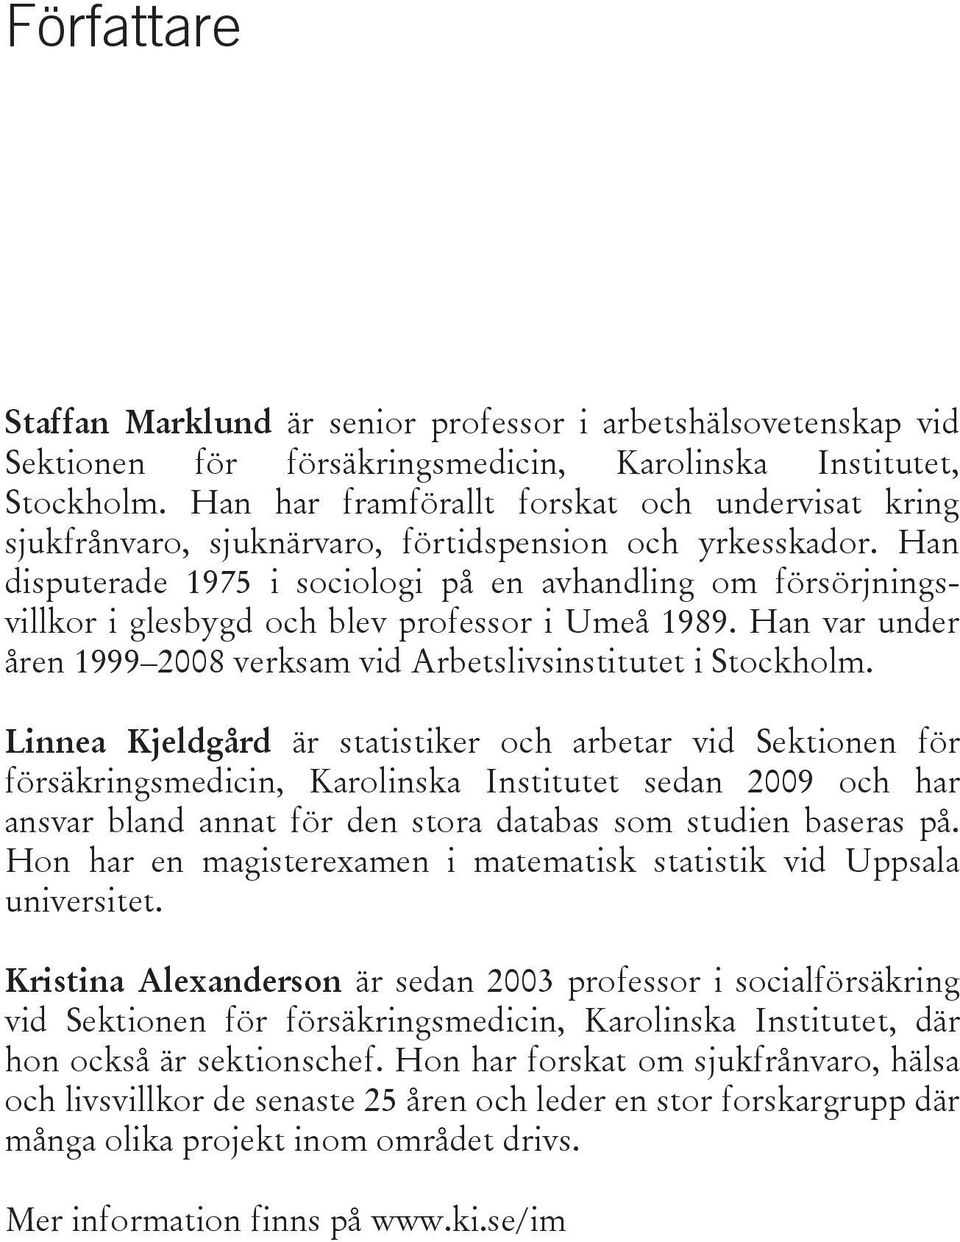 Han disputerade 1975 i sociologi på en avhandling om försörjningsvillkor i glesbygd och blev professor i Umeå 1989. Han var under åren 1999 2008 verksam vid Arbetslivsinstitutet i Stockholm.